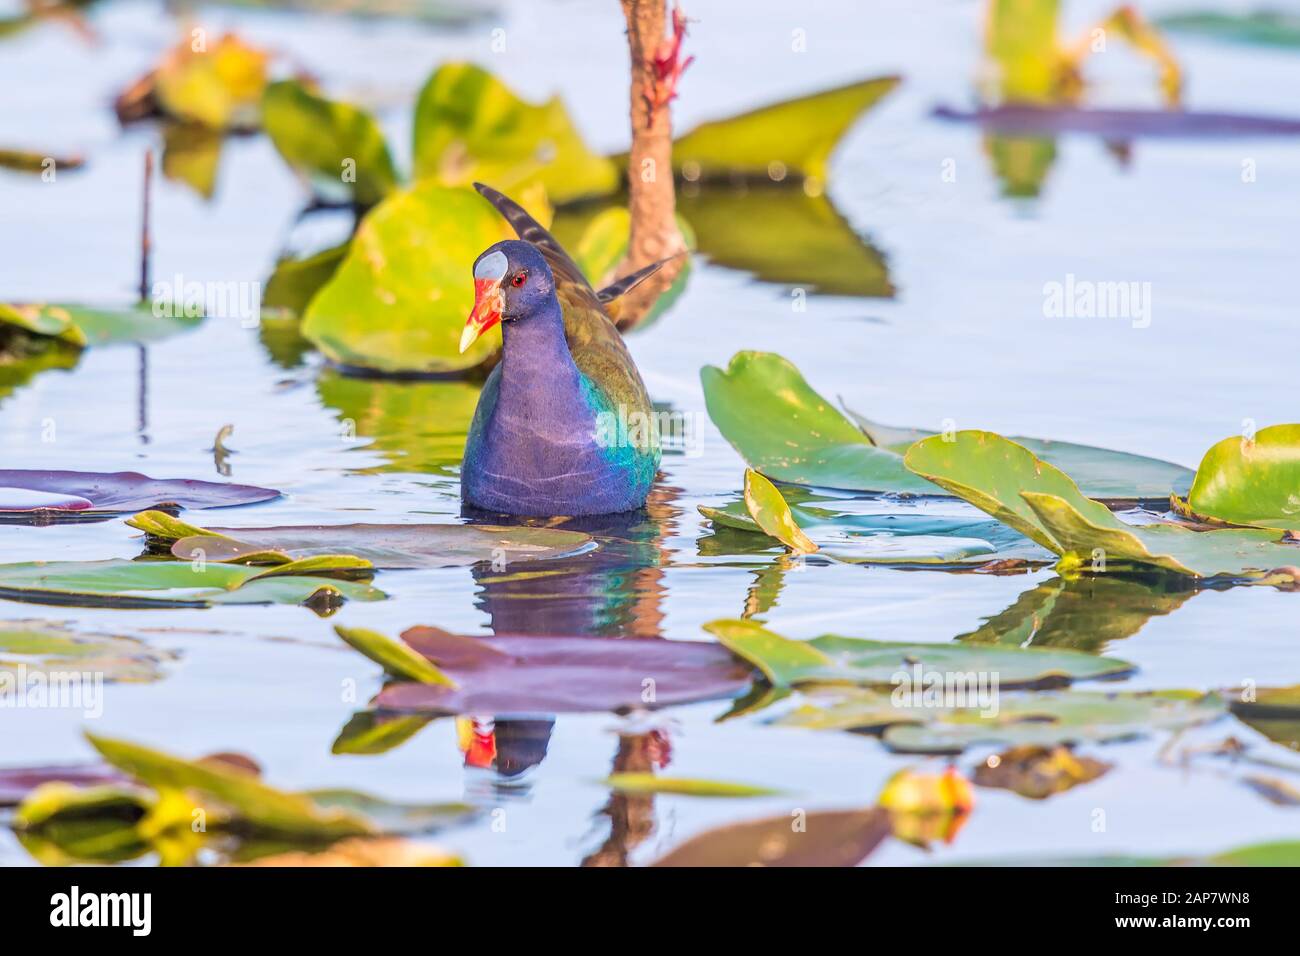 Le gallinule violet américain (Porphyrio martinicus) se trouve dans le parc national des Everglades. Sentier d'Anhinga. Floride. ÉTATS-UNIS Banque D'Images